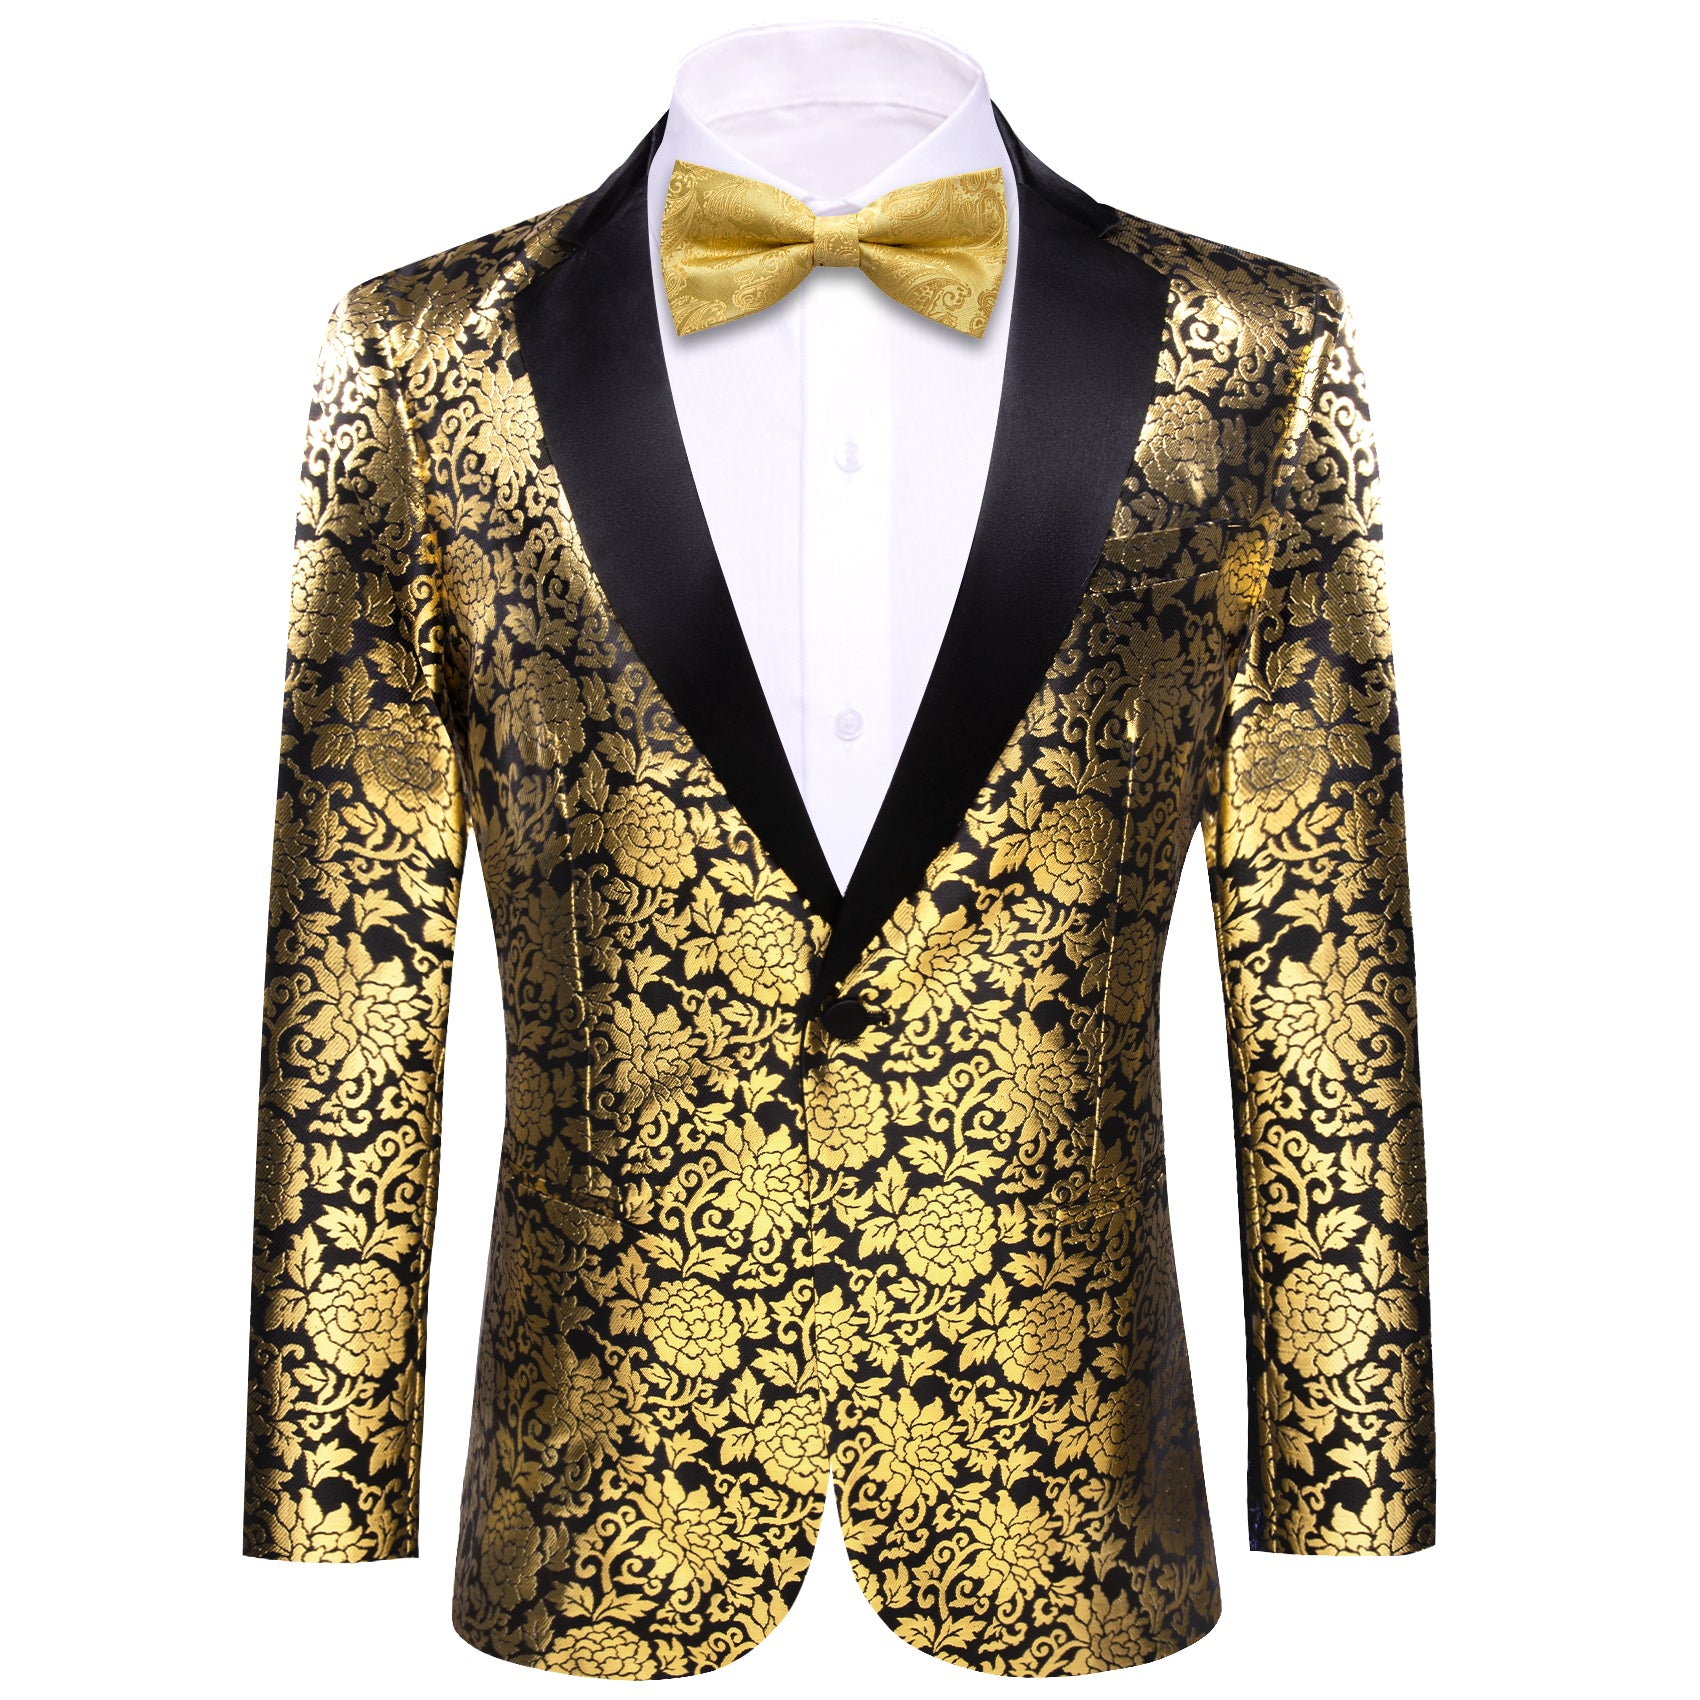 Men's Dress Party Black Gold Floral Suit Jacket Slim One Button Stylish Blazer